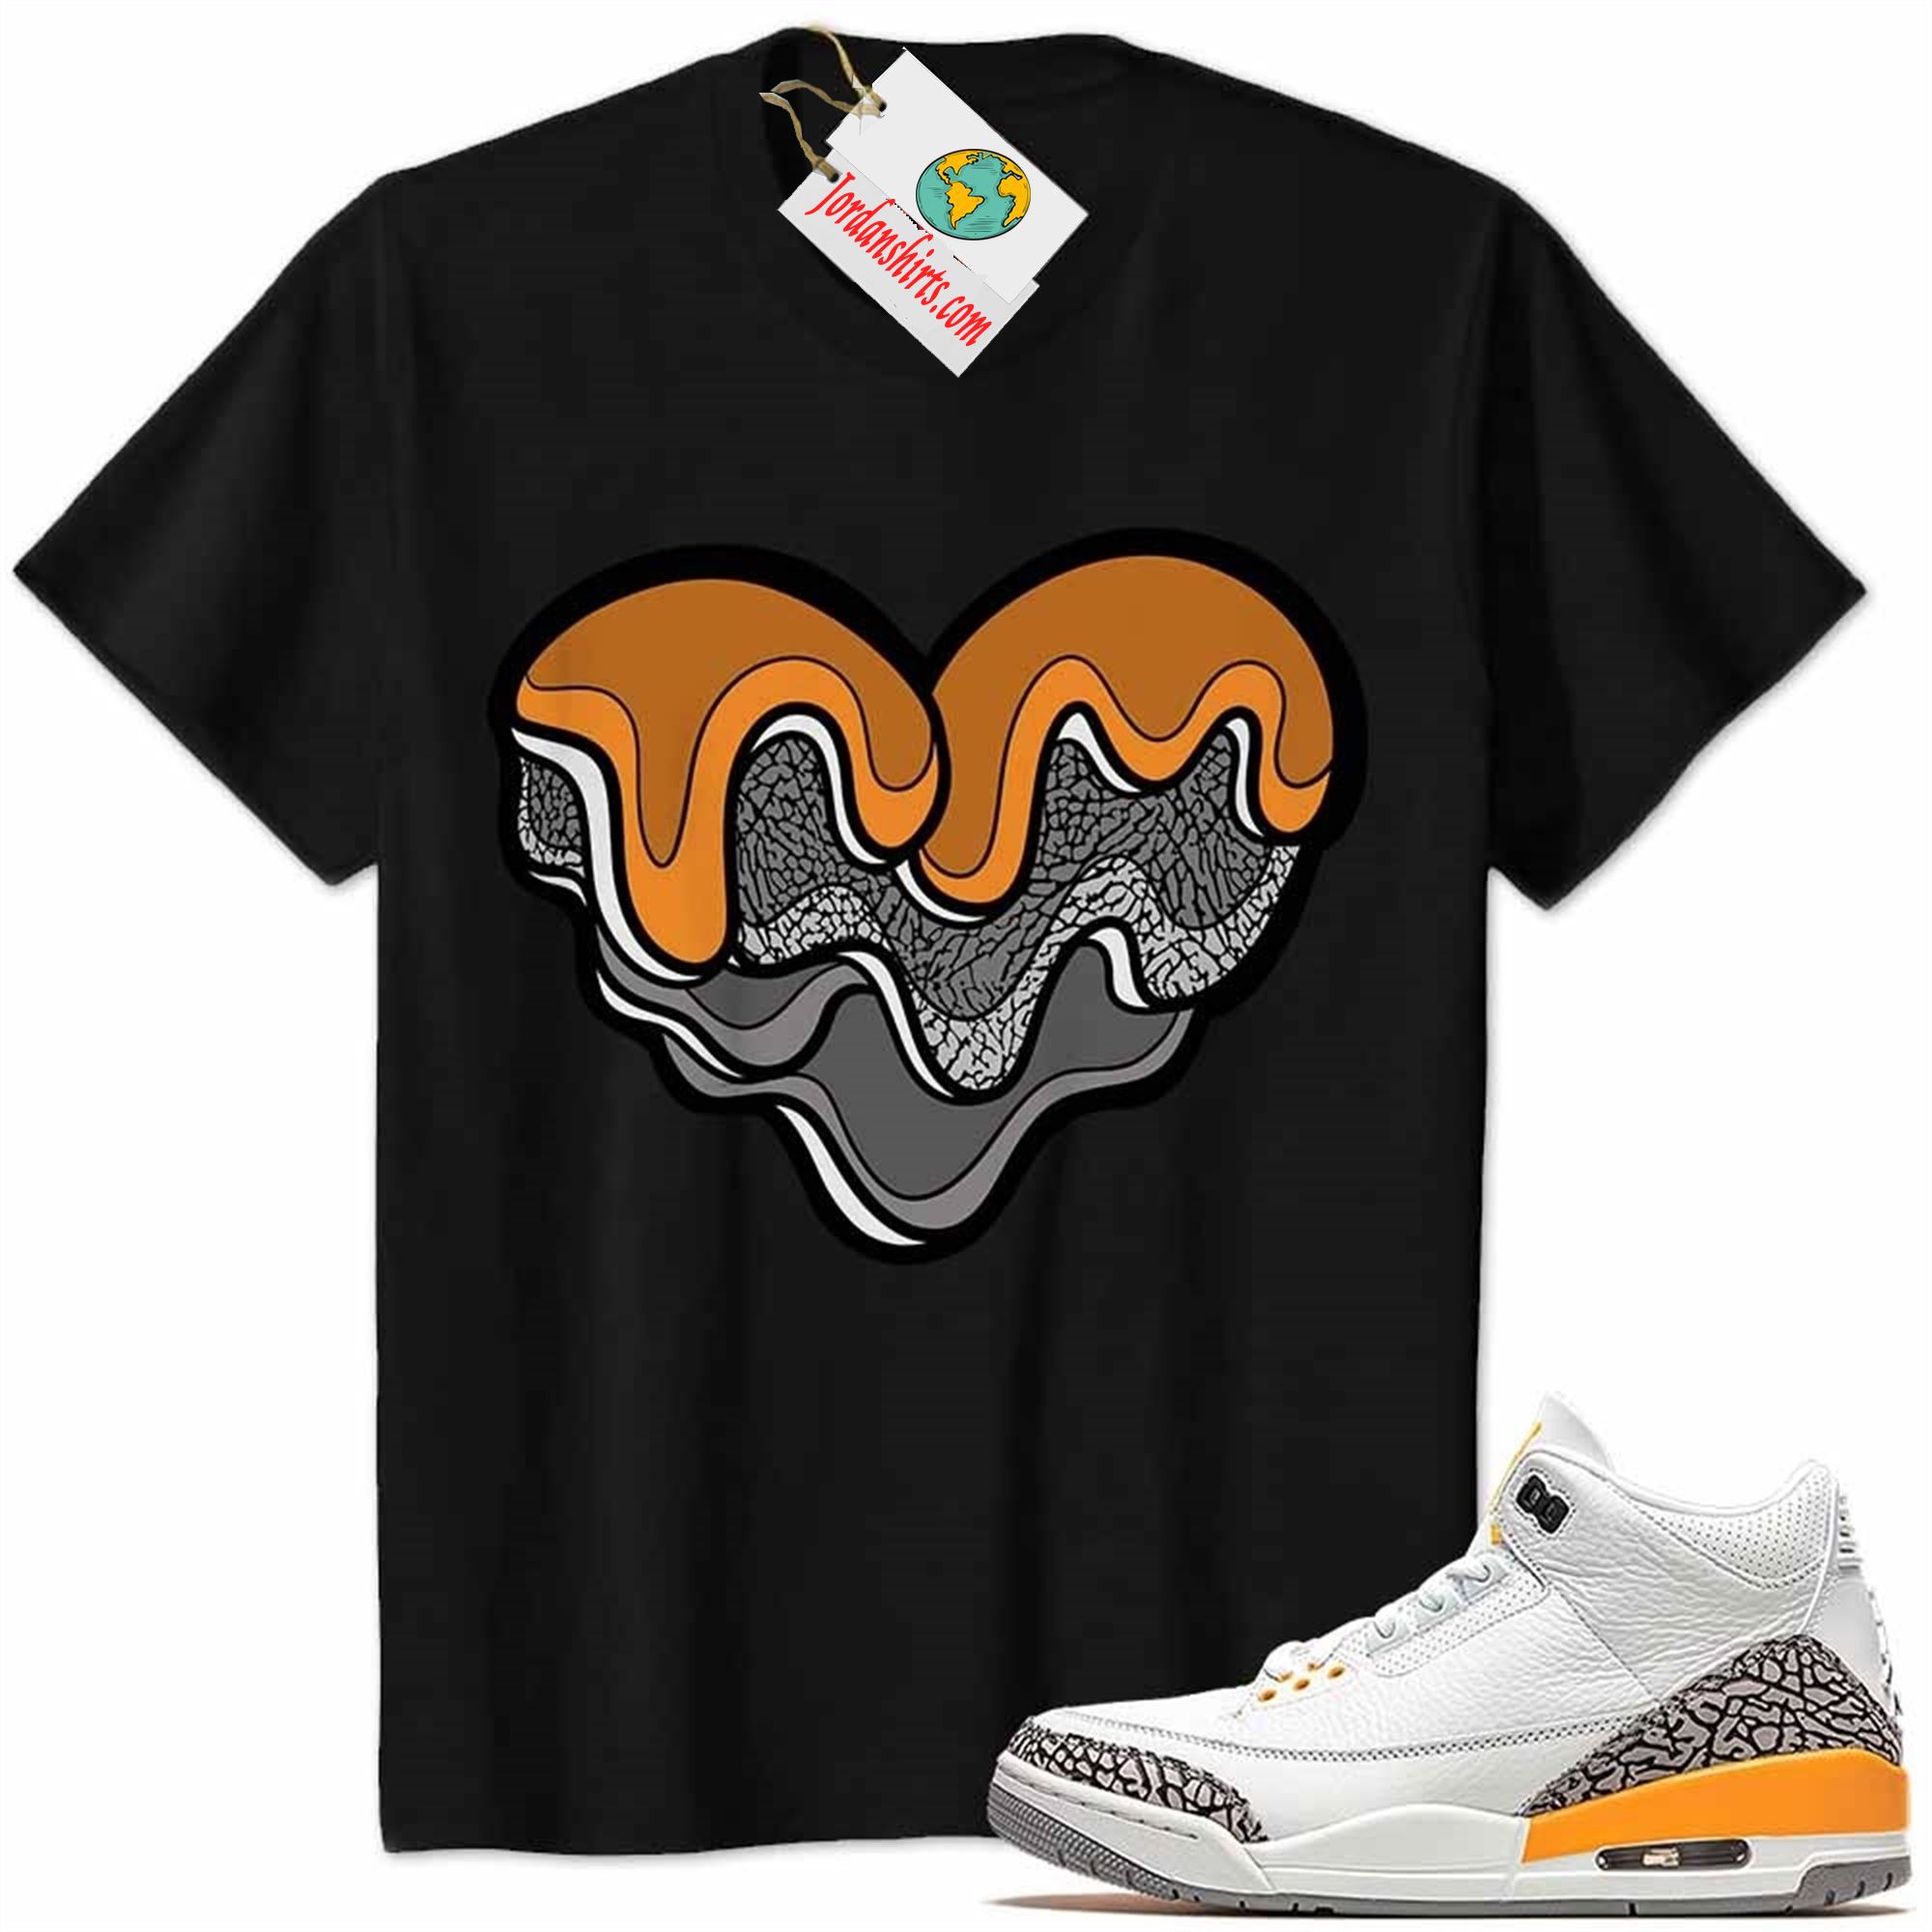 Jordan 3 Shirt, Melt Dripping Heart Black Air Jordan 3 Laser Orange 3s Plus Size Up To 5xl